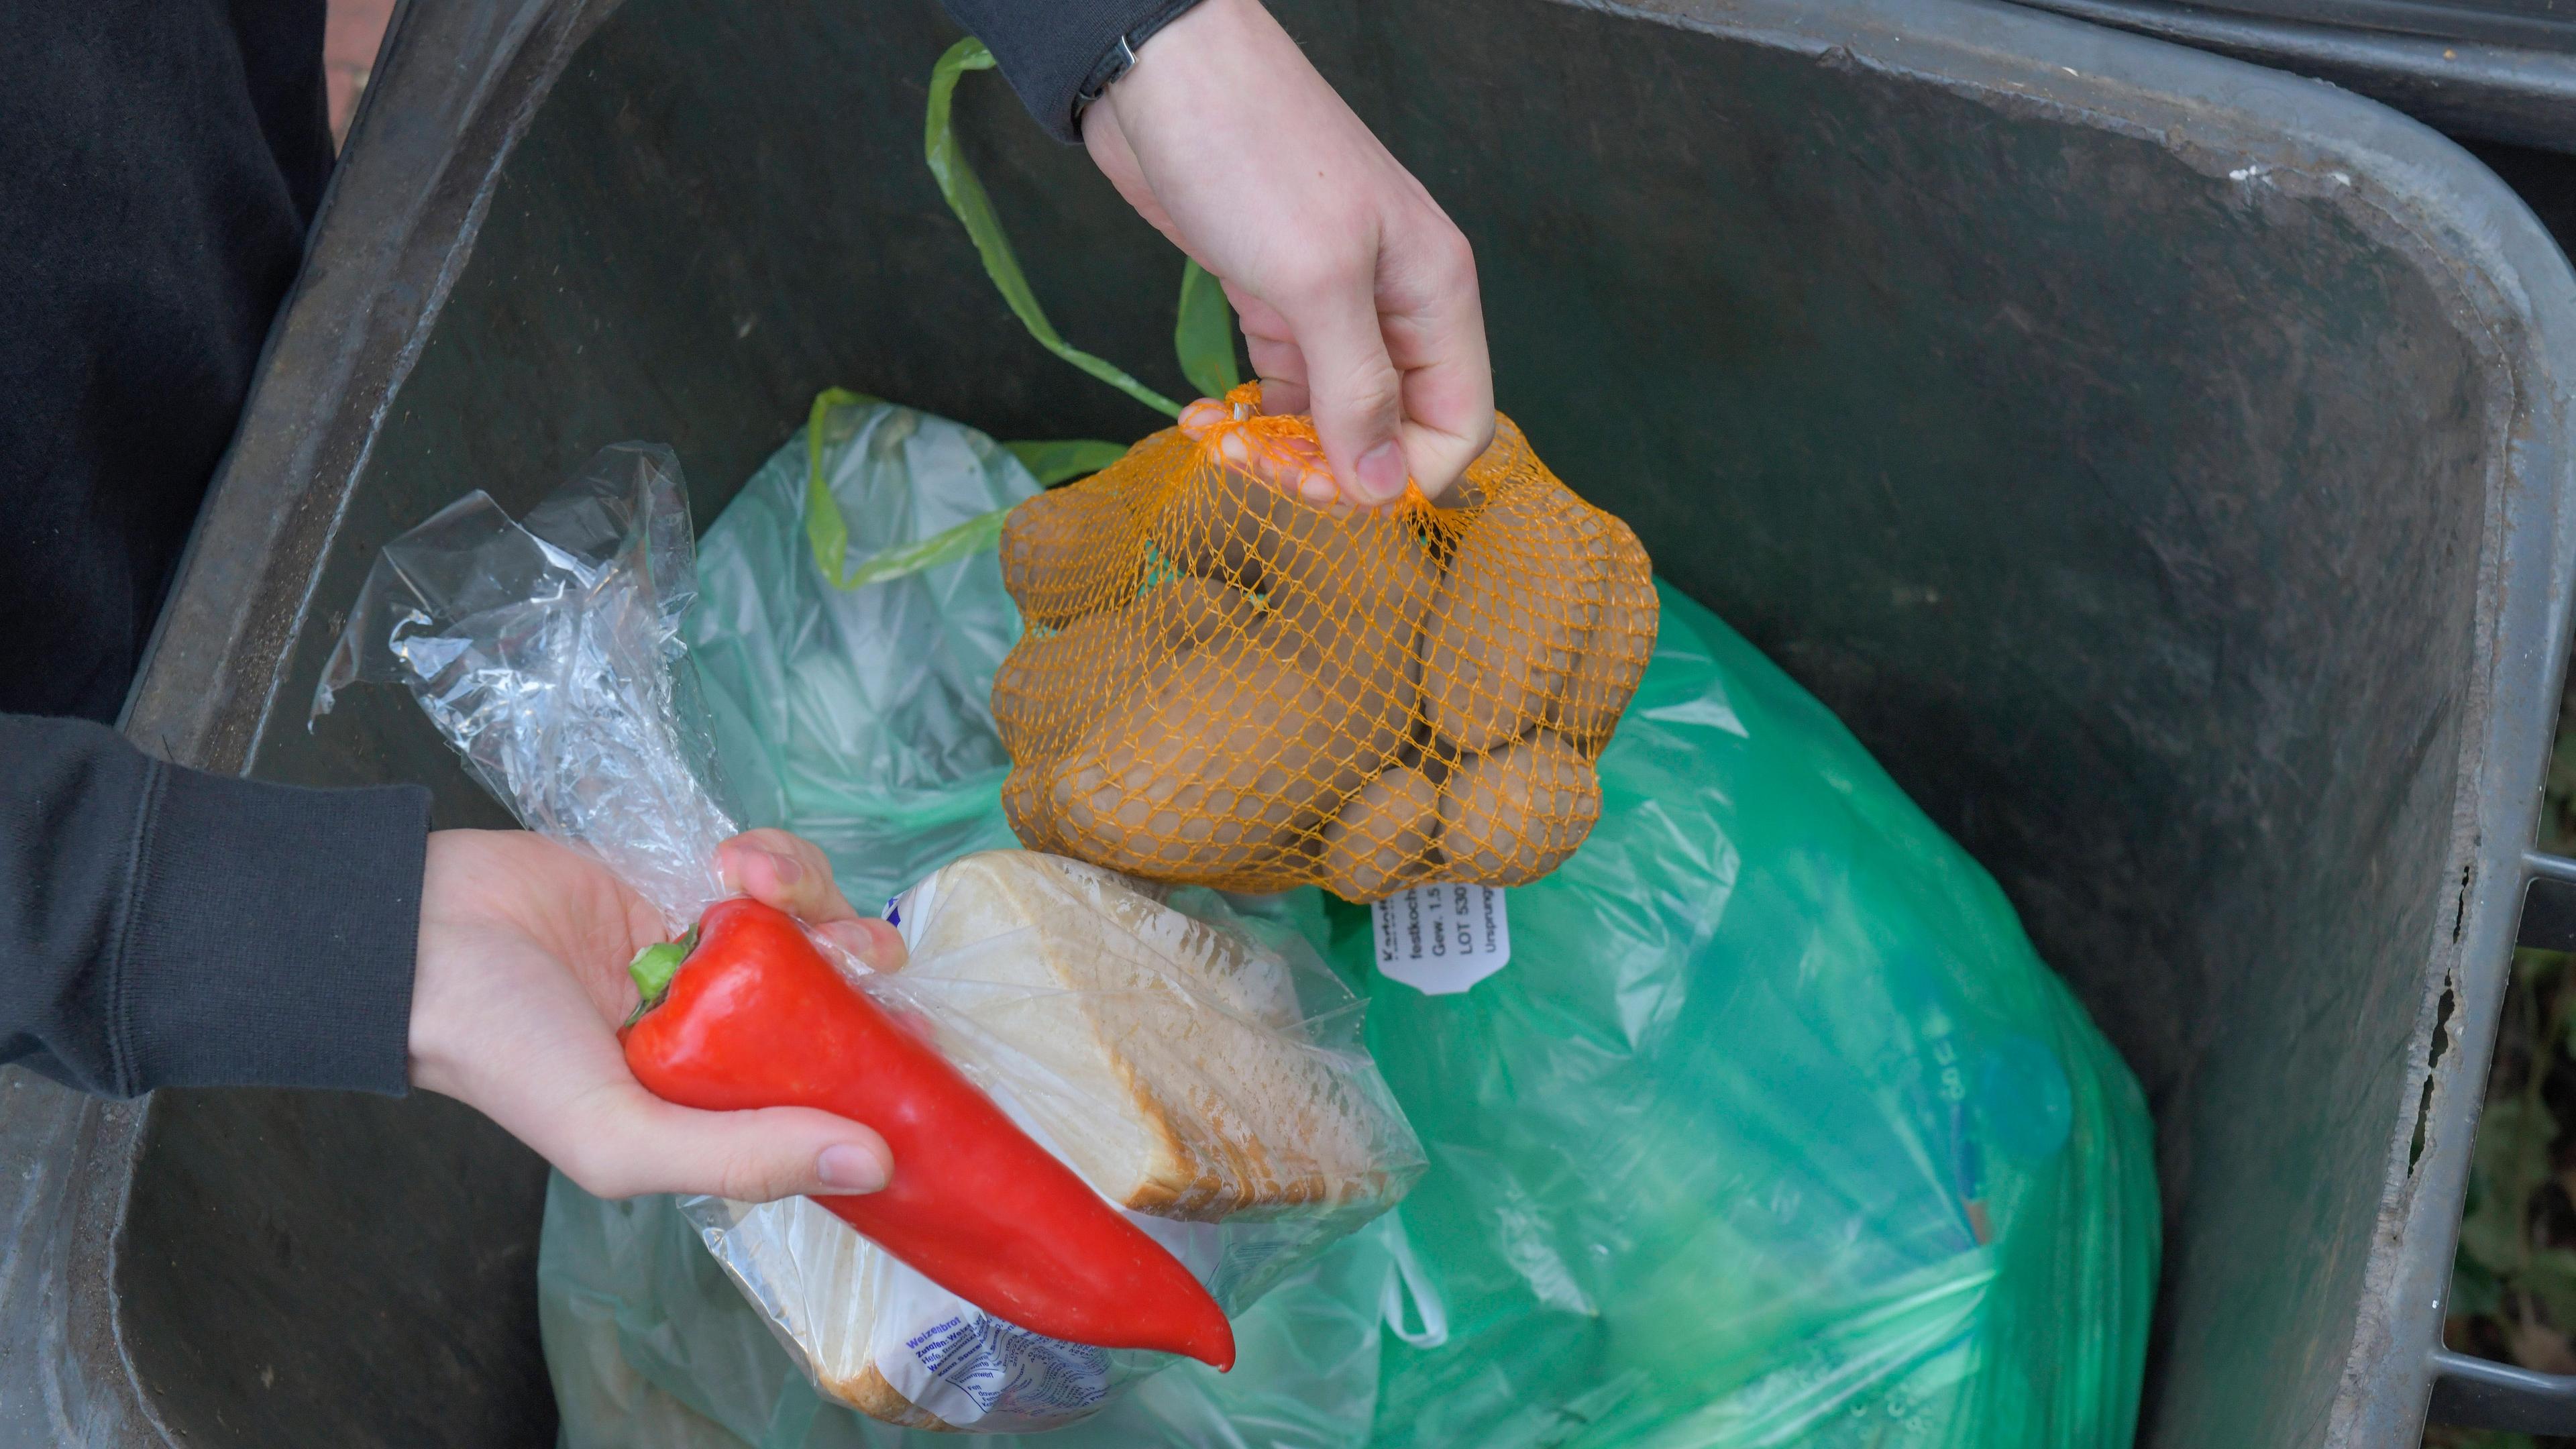 Symbolfoto: Müllcontainer mit Lebensmittel, aufgenommen am 12.01.2020